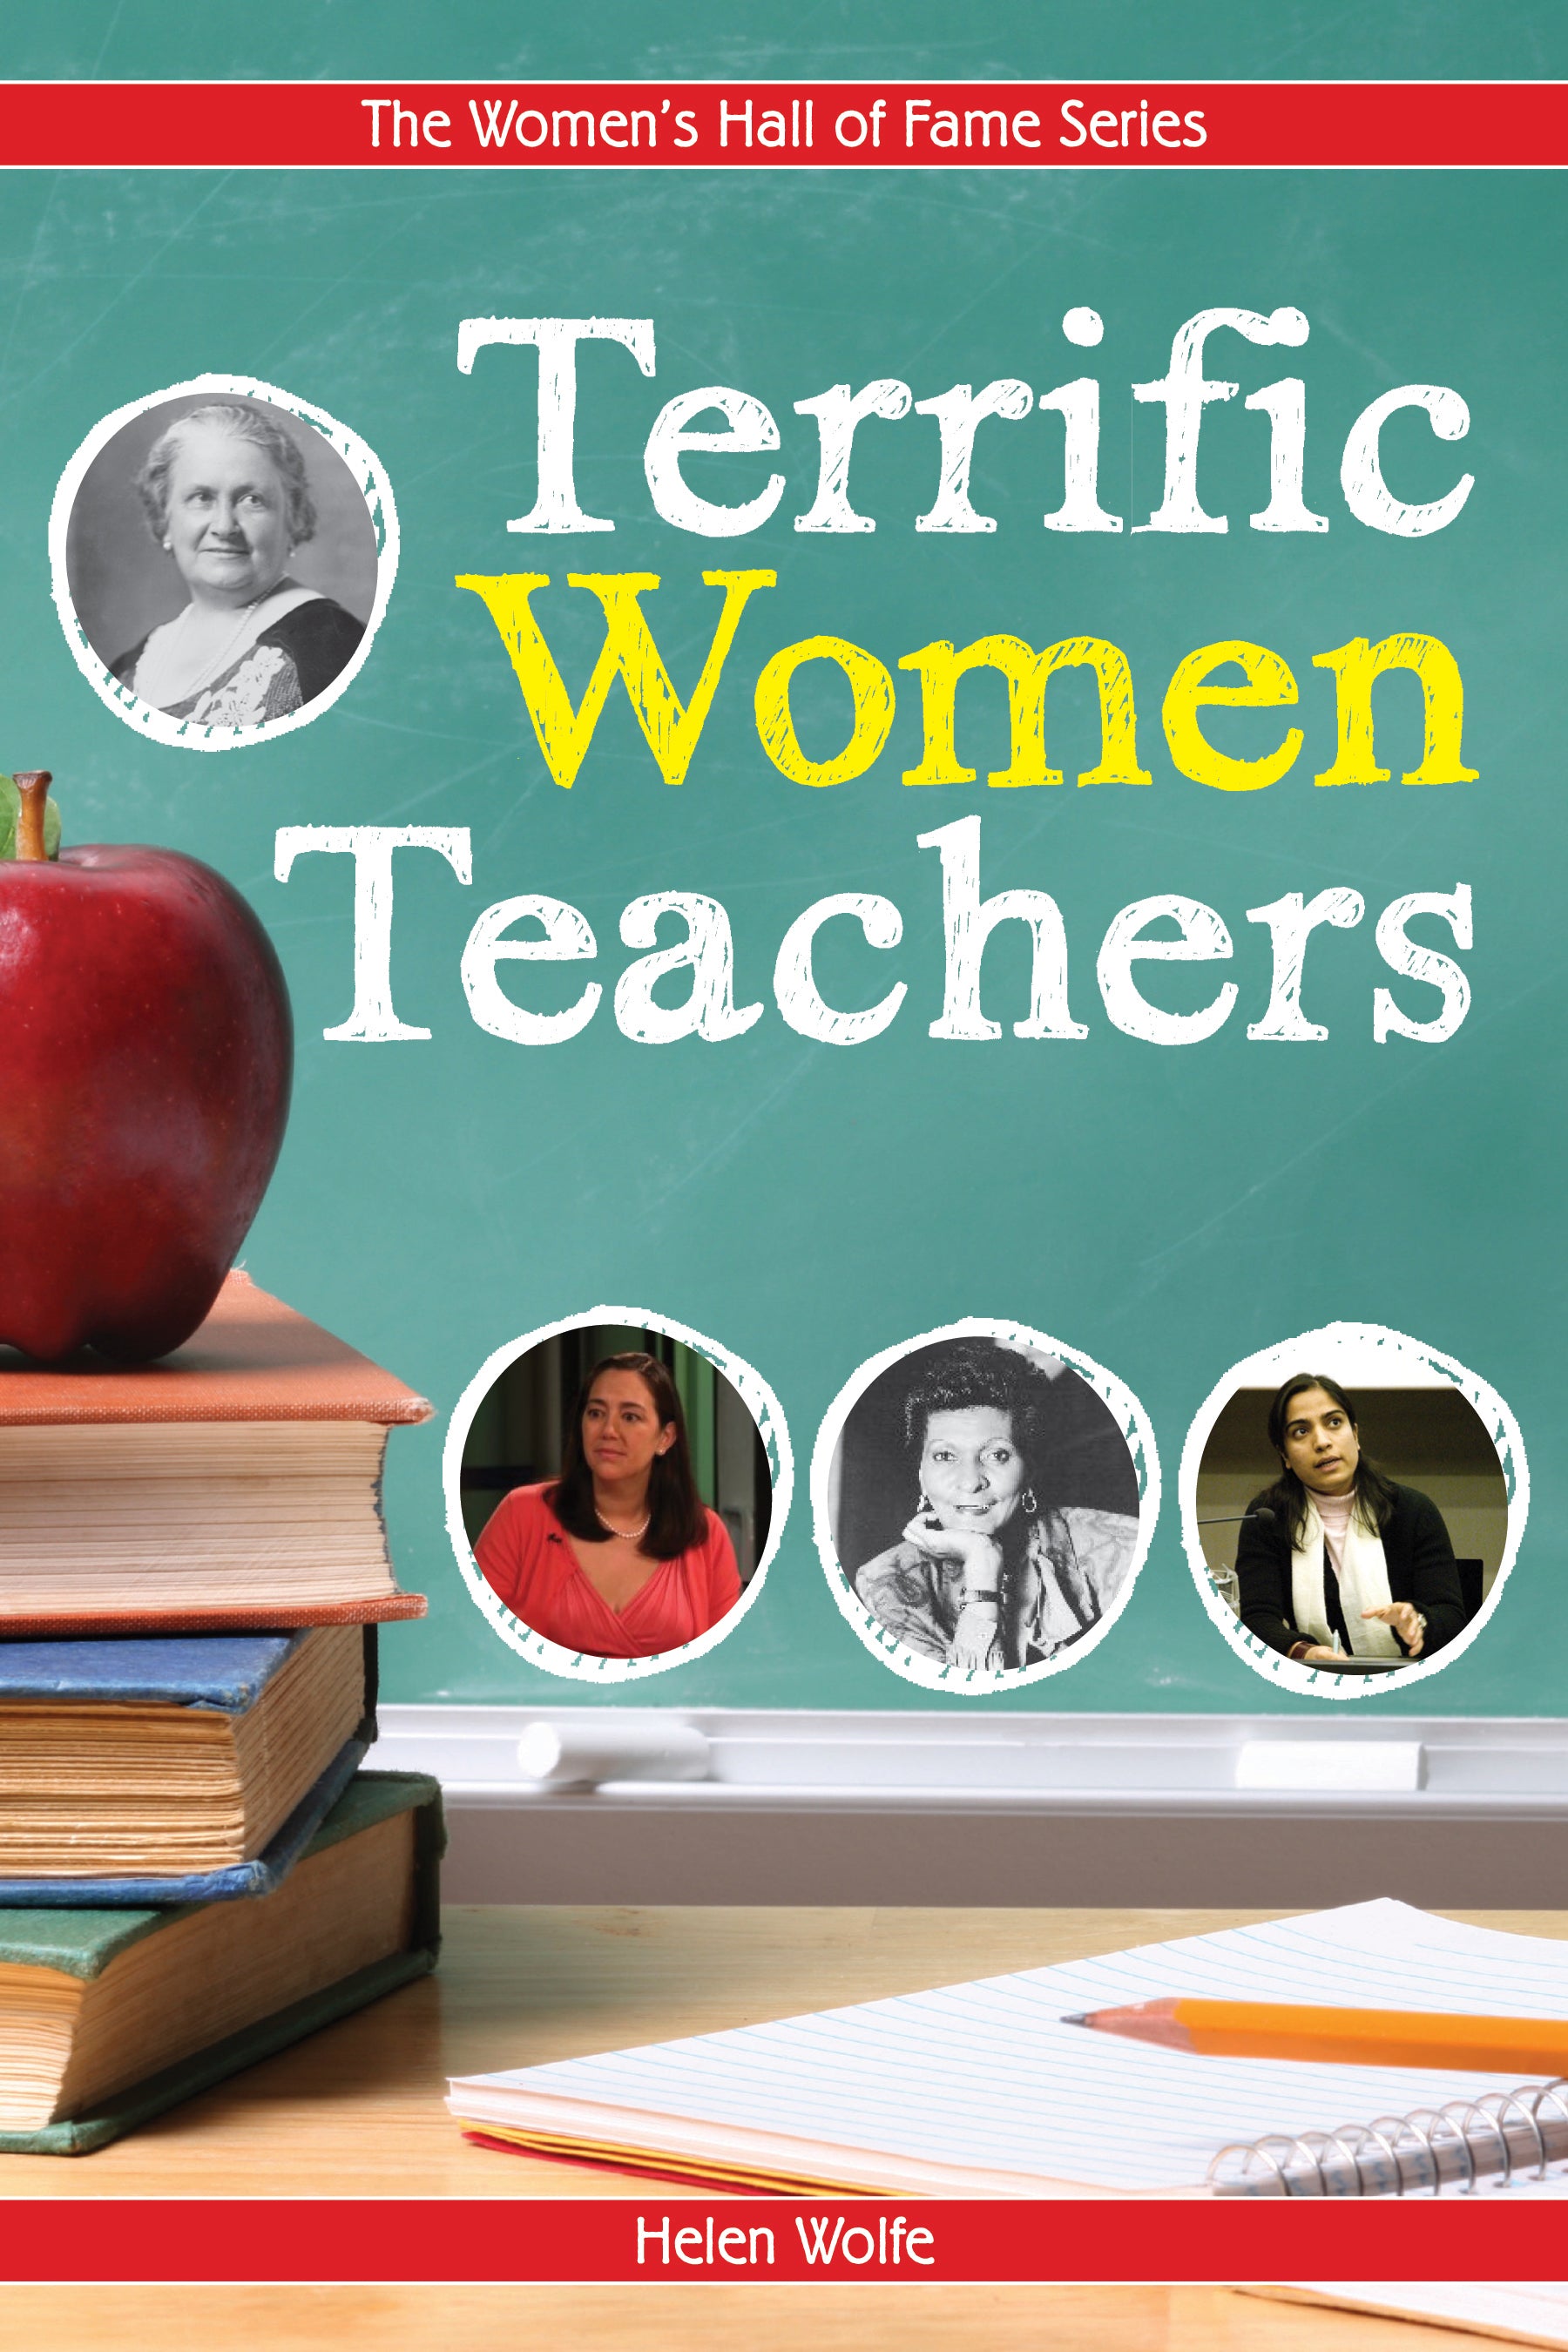 Terrific Women Teachers